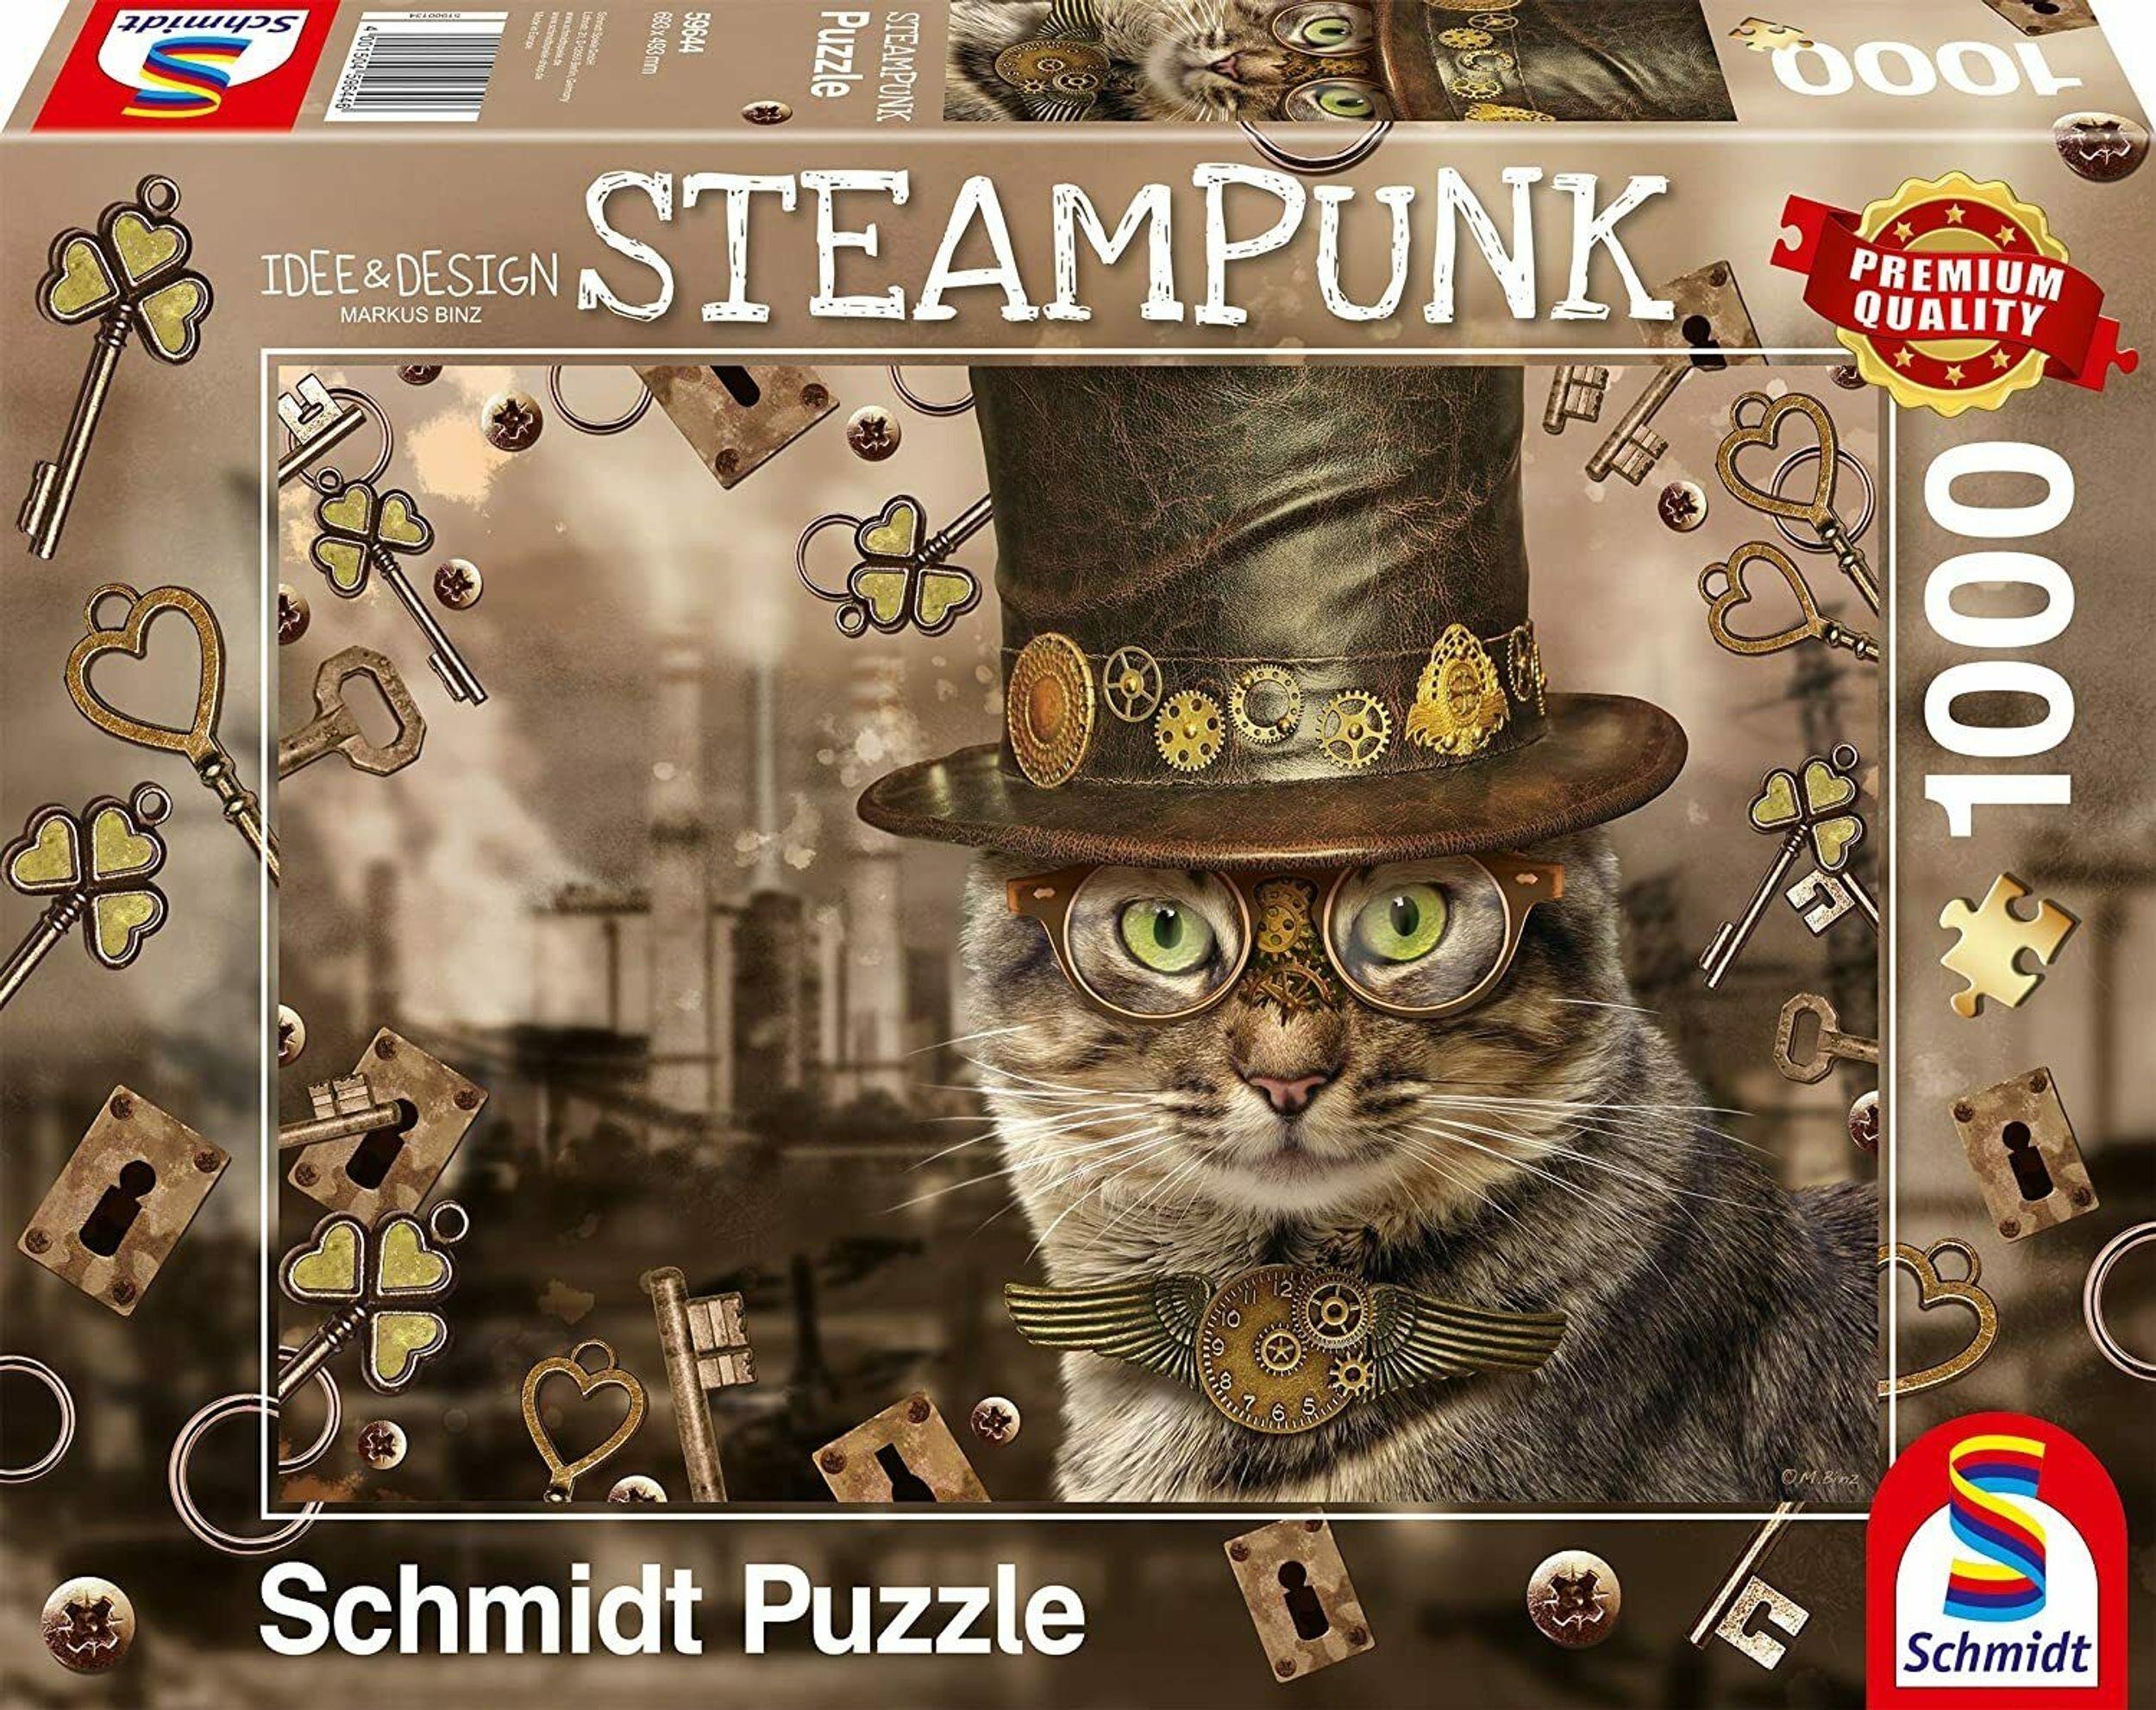 SPIELE SCHMIDT Katze Puzzle Steampunk